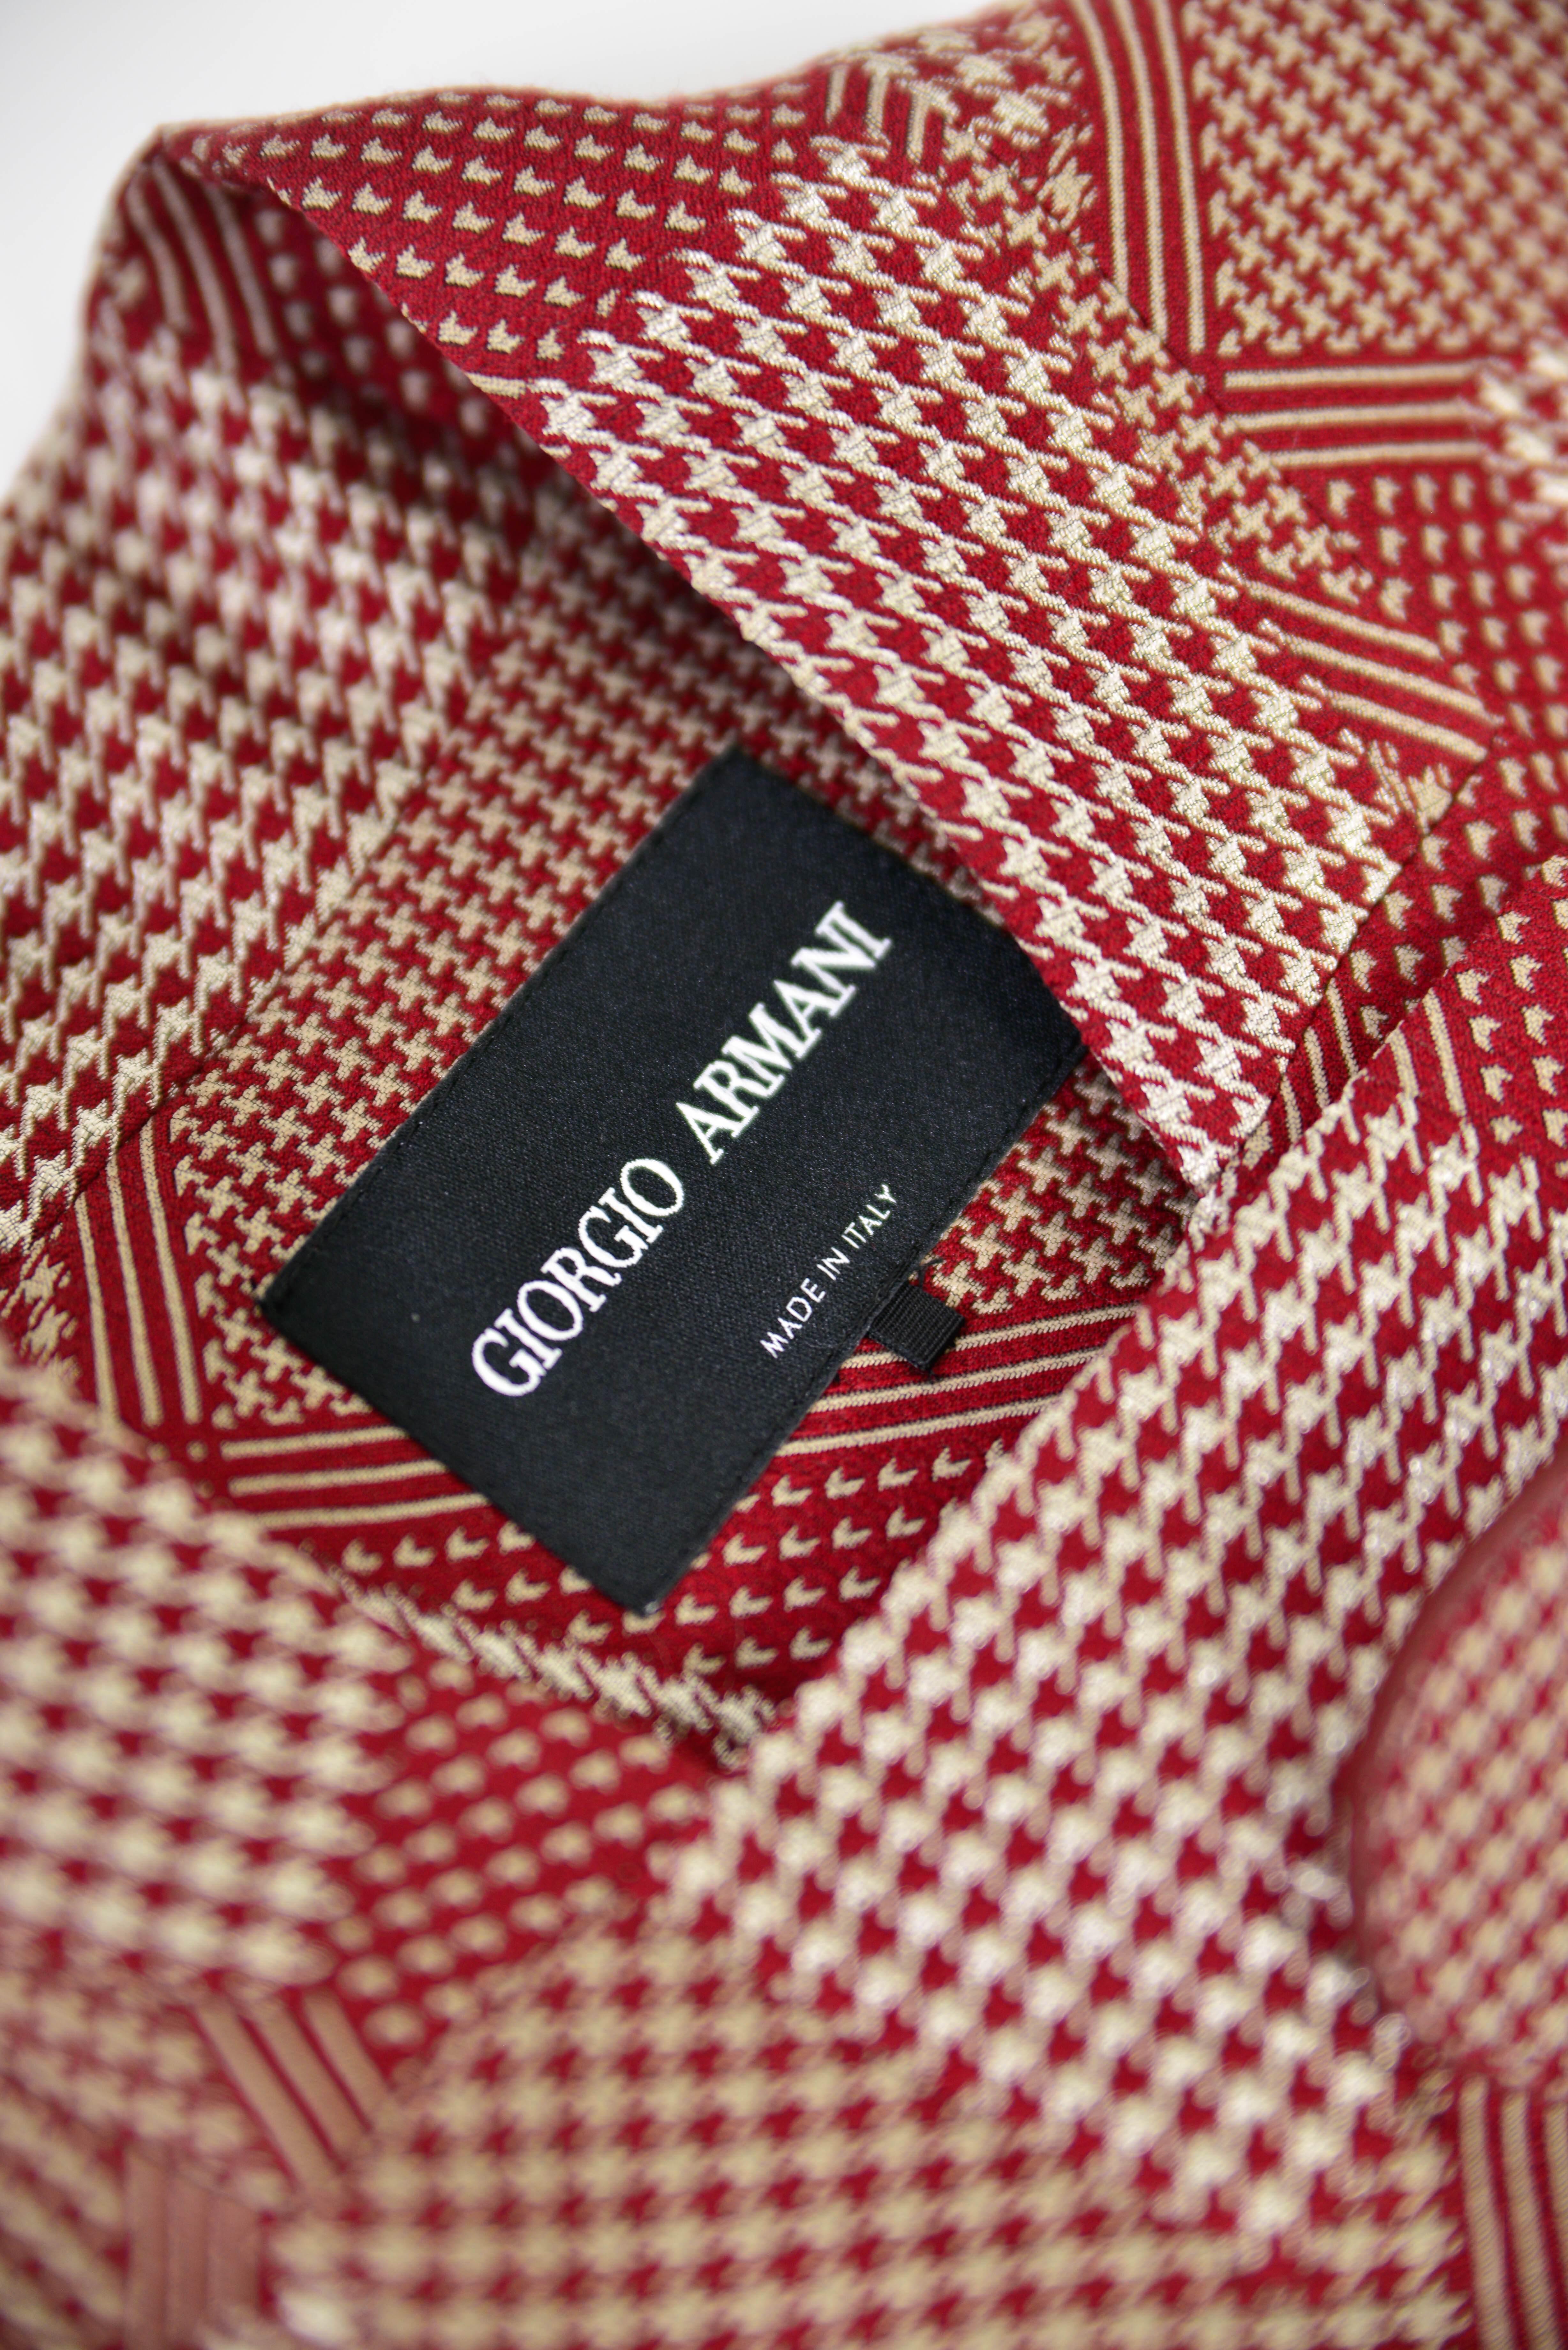 Giorgio Armani Blazer in der Groesse 34 rot und silber kariert Detailansicht auf das Logo